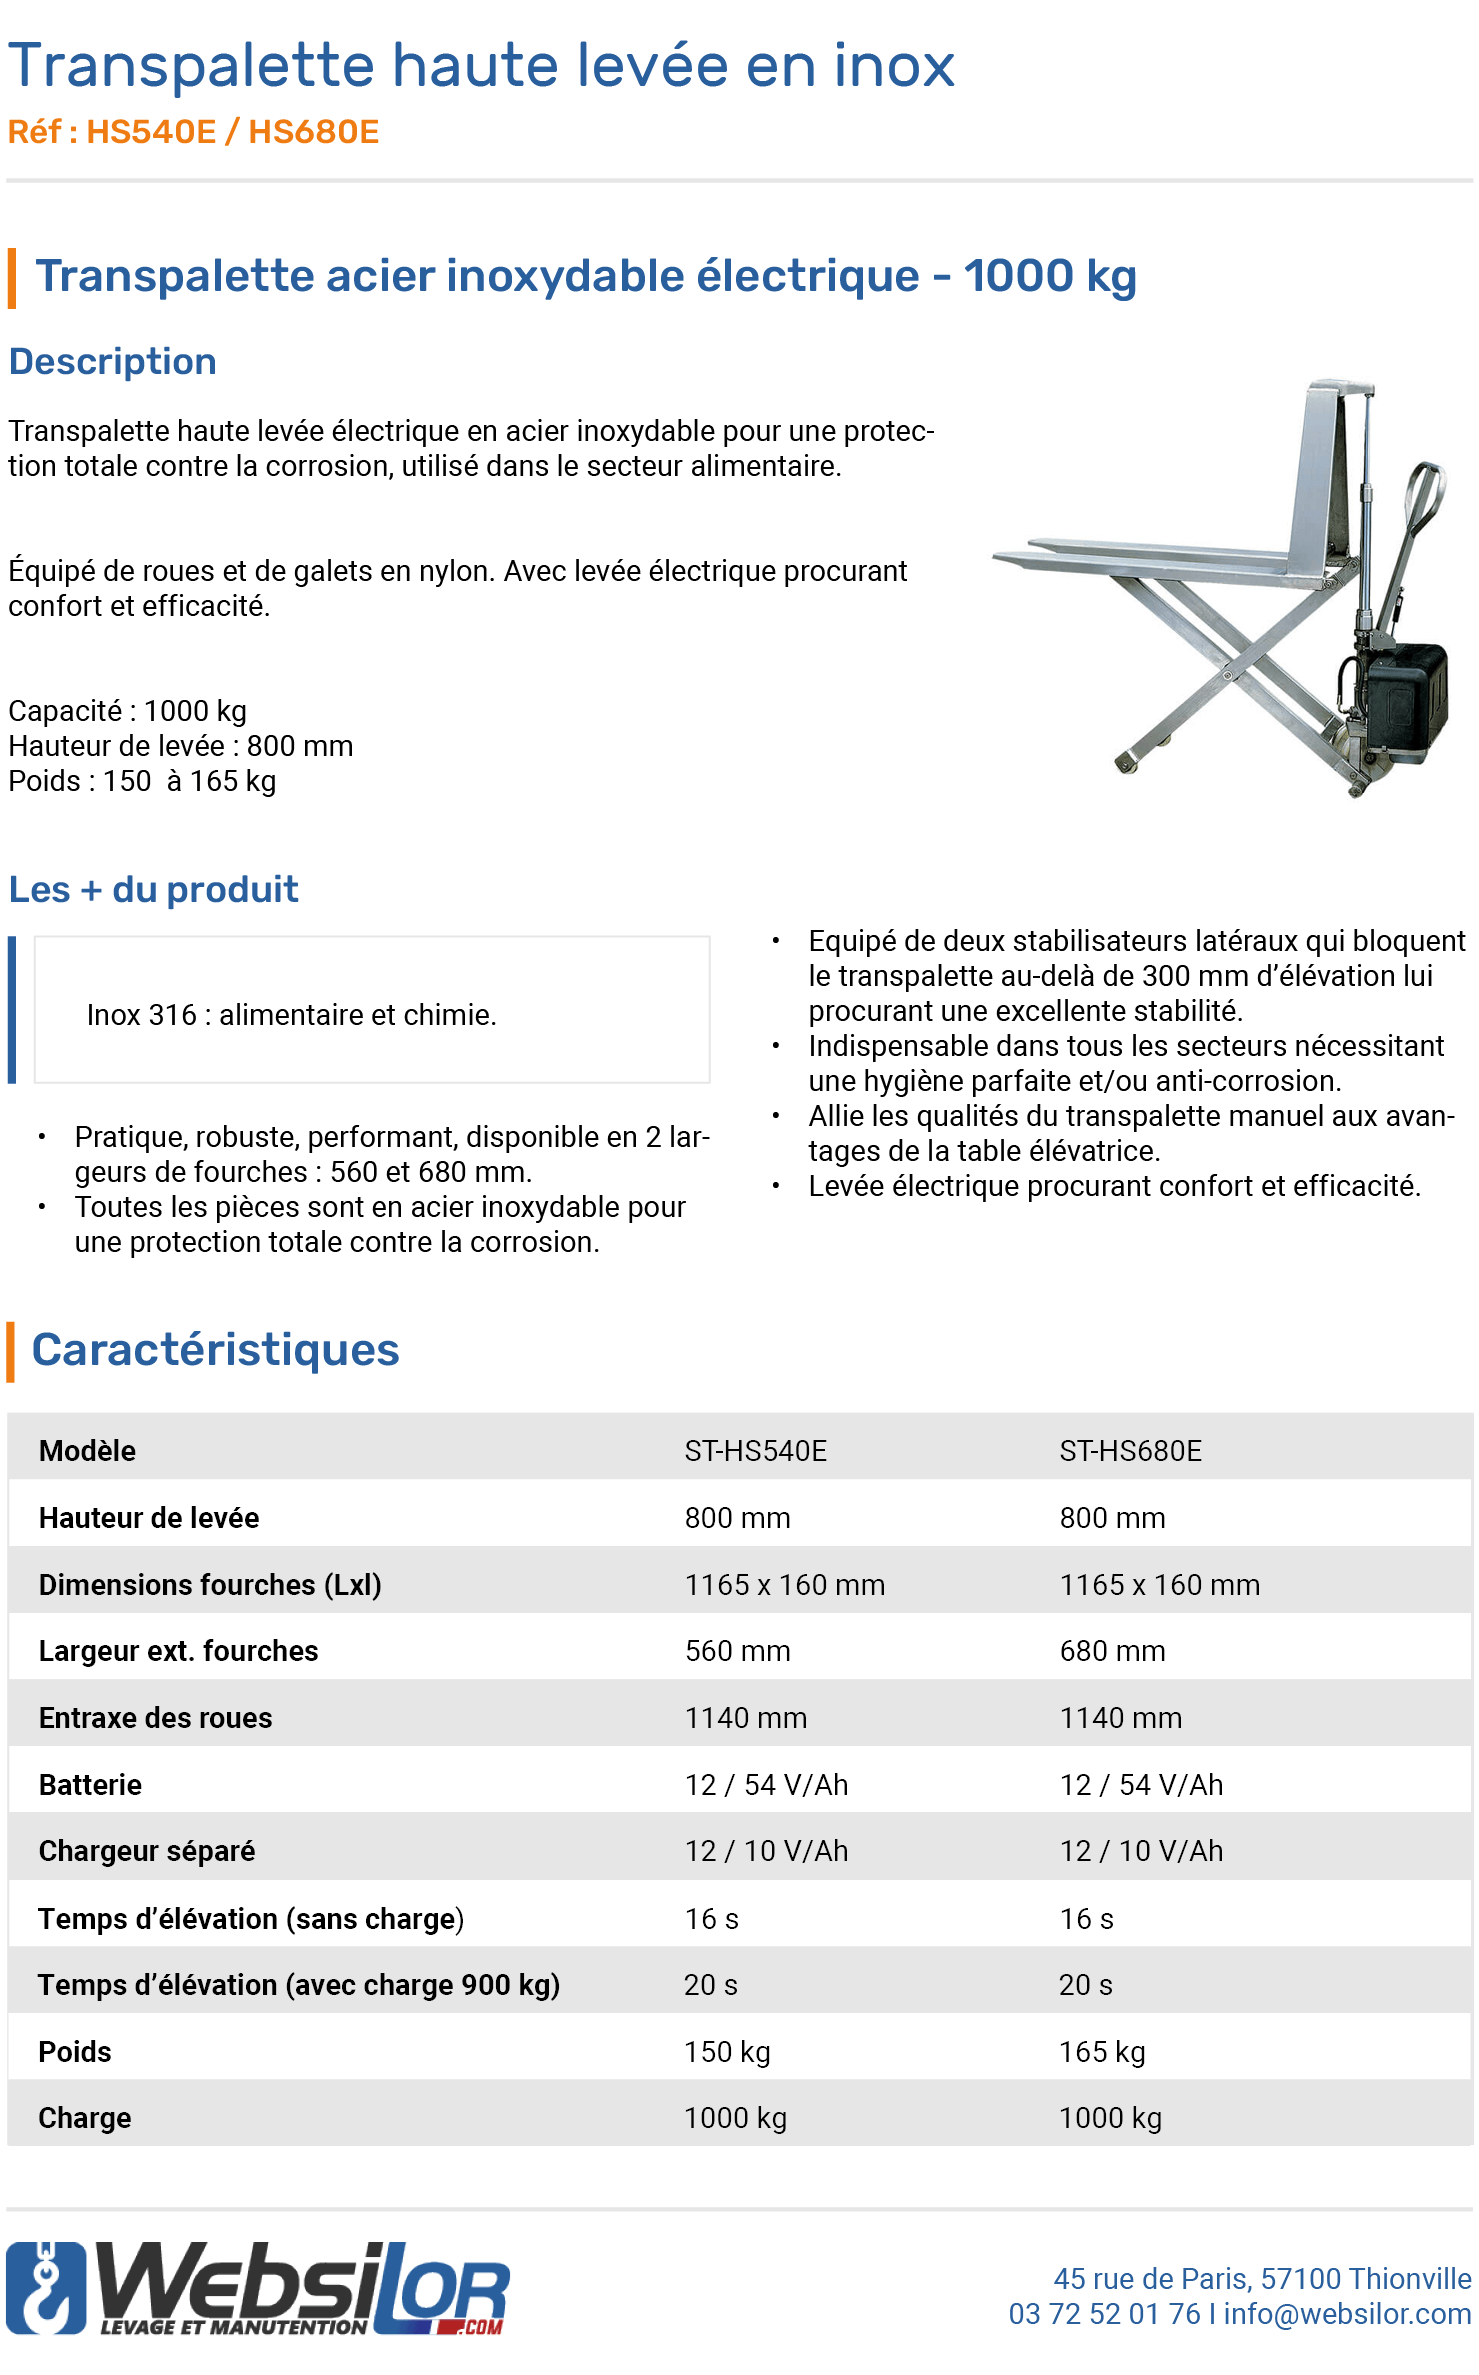 Informations technique de Transpalette haute levée électrique inox 1000 kg